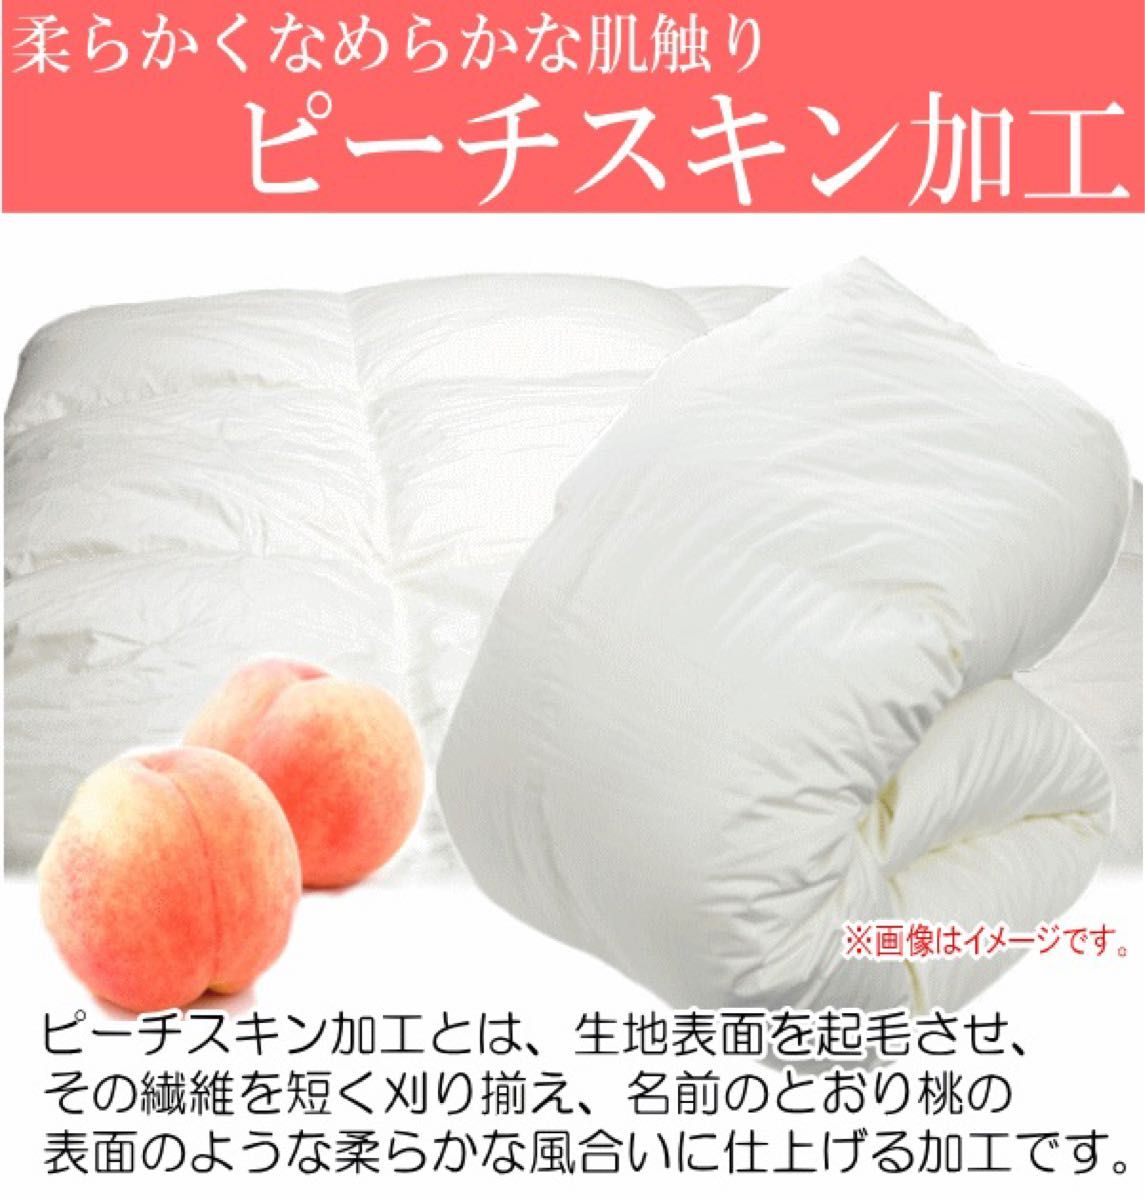 羽毛布団 キング ポーランド産ホワイトマザーグース 日本製 二層キルト 超長綿 ロイヤルゴールドラベル 生成り